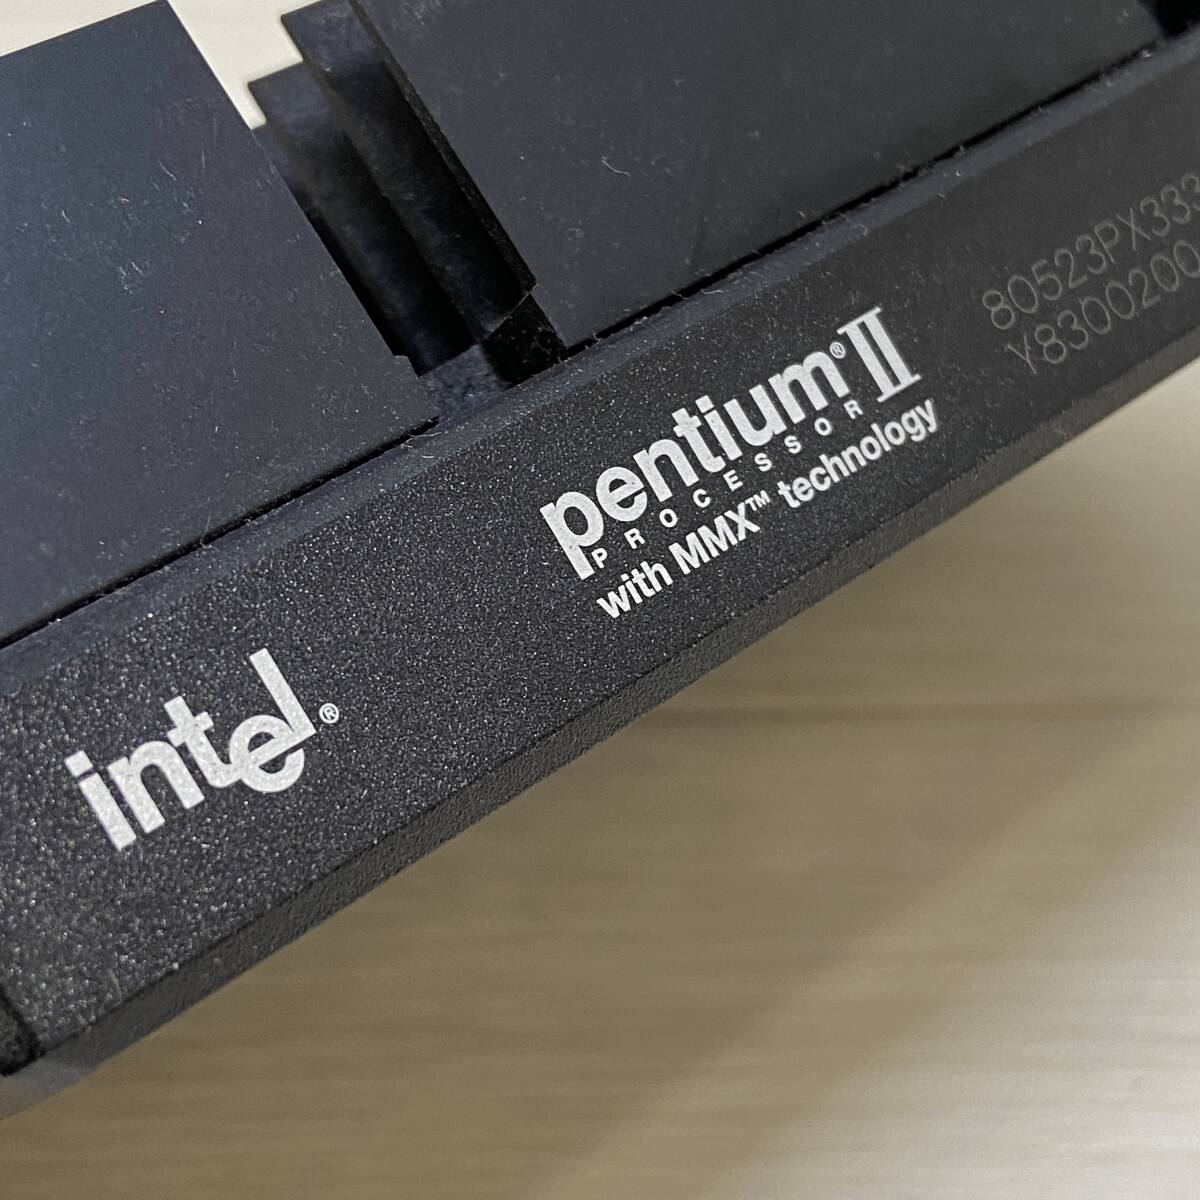 Σpentium II インテル Foxconn 179069-001 コンピューター パーツ 部品 CPU ブラック 動作未確認 現状品ΣR52379の画像4